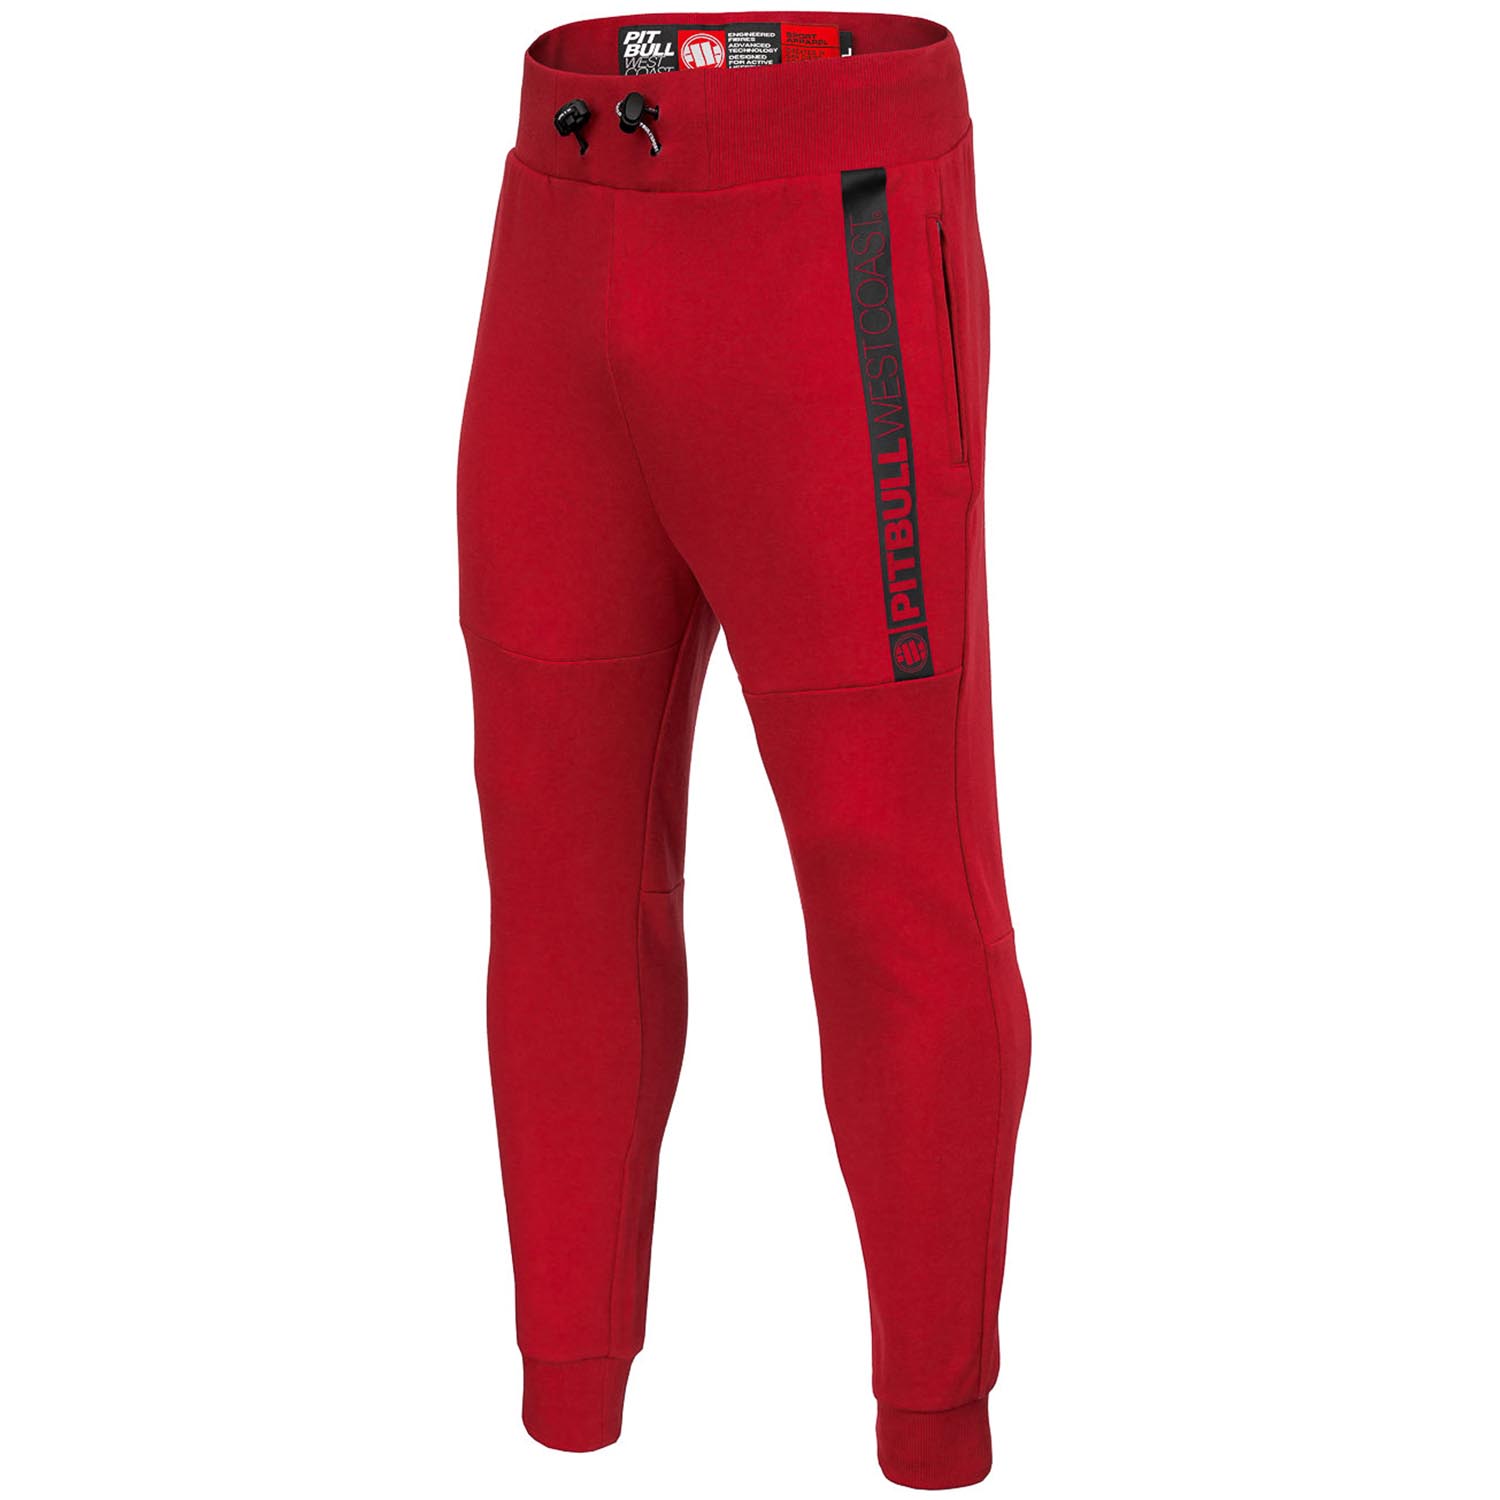 Pit Bull West Coast Jogging Pants, Phoenix, red, S